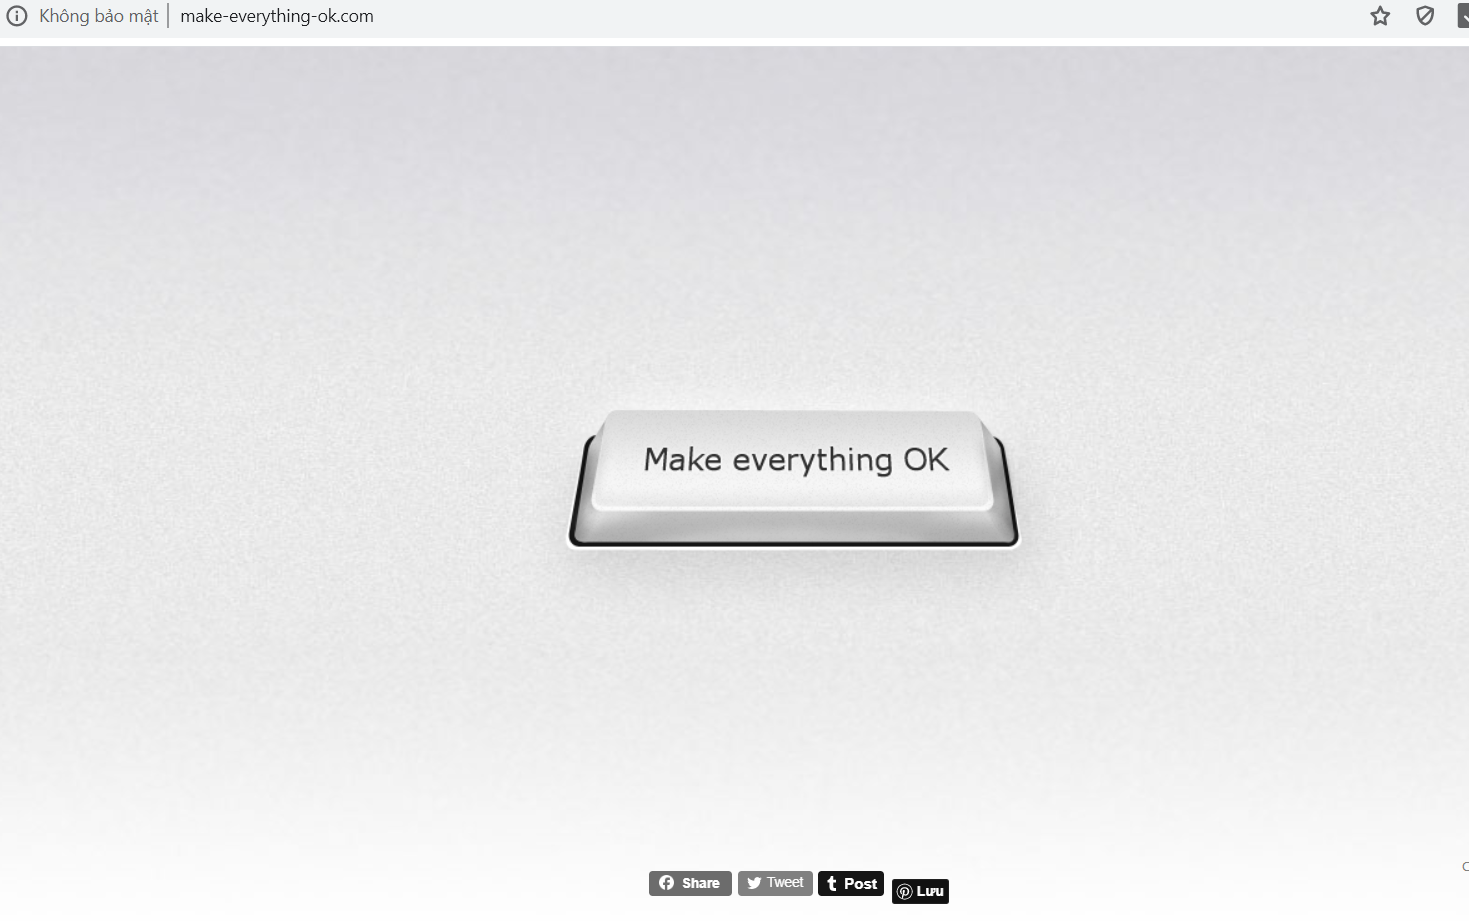 WEBSITE: make-everything-ok.com